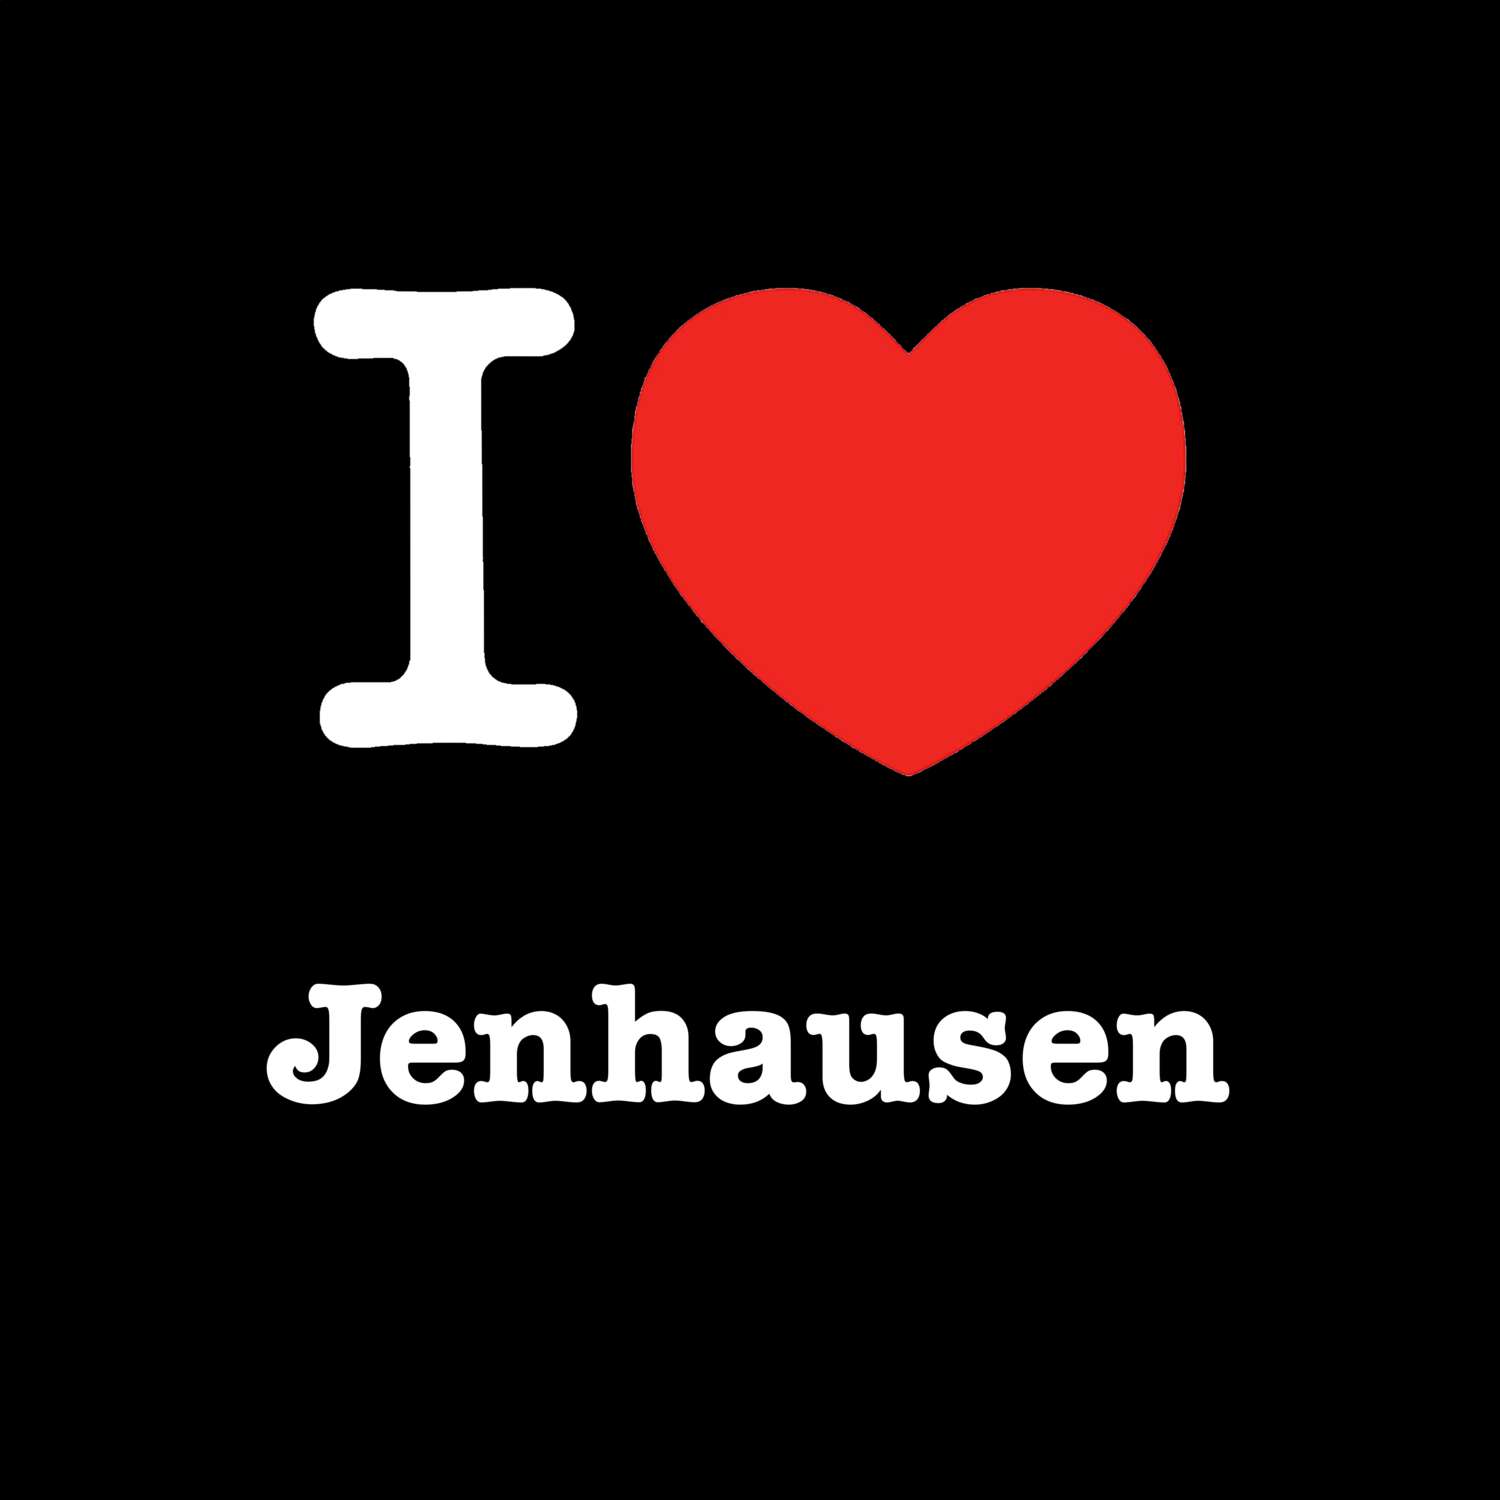 Jenhausen T-Shirt »I love«